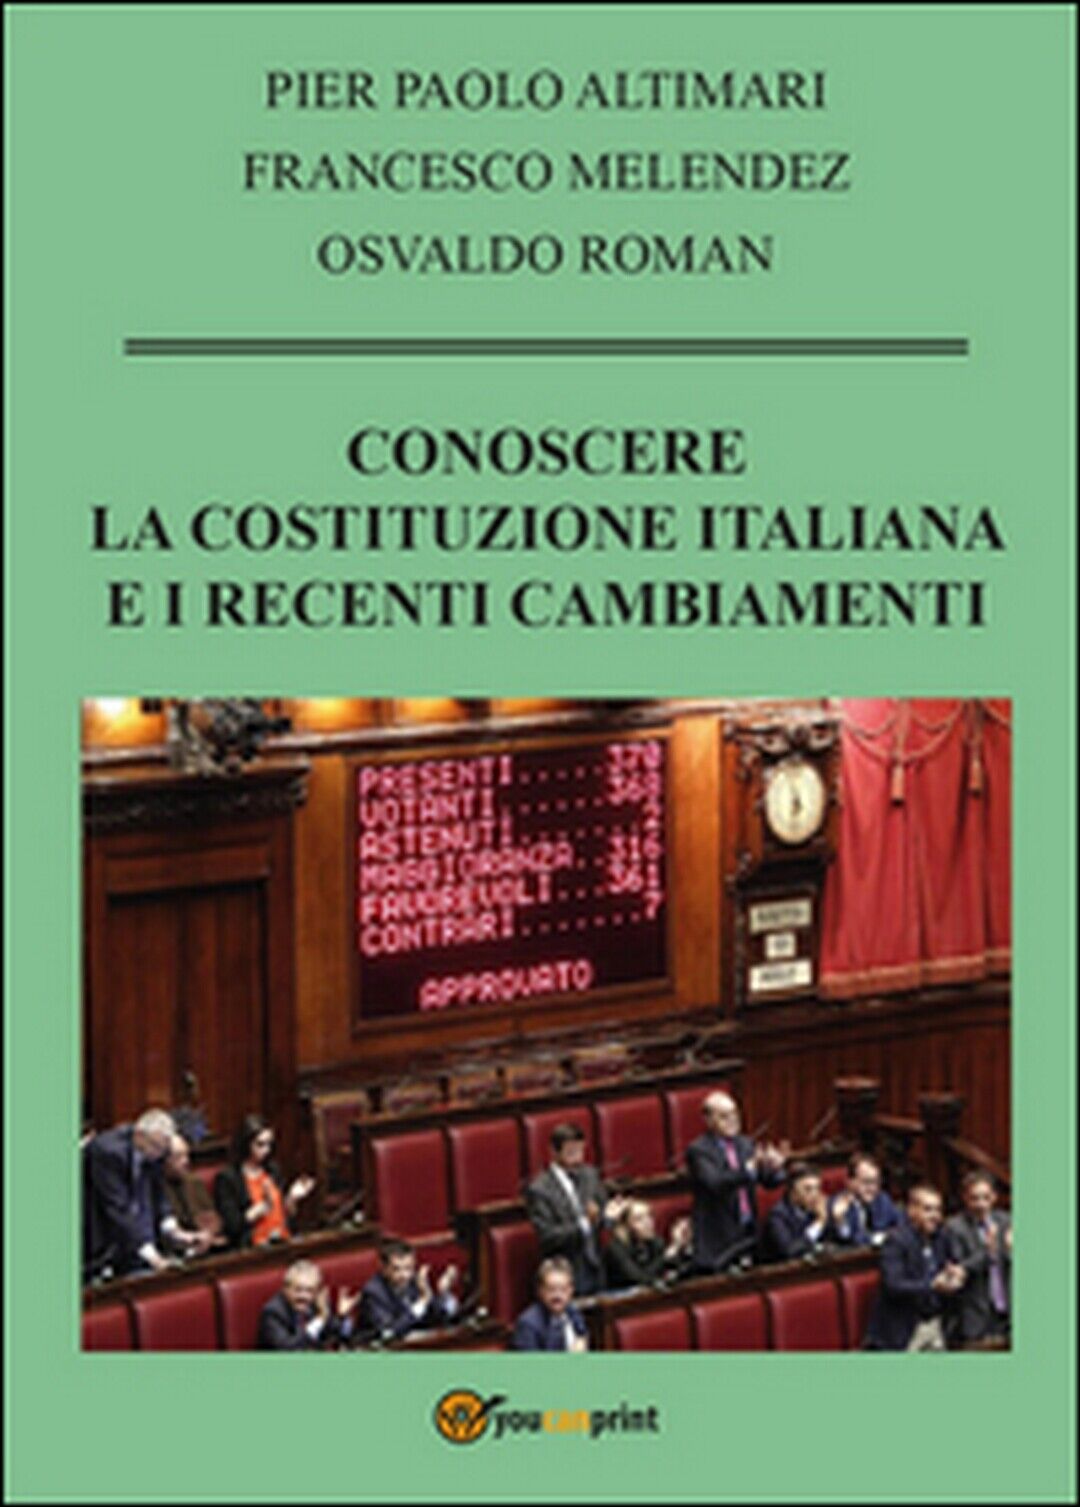 Conoscere la Costituzione italiana e i recenti cambiamenti, Francesco Melendez